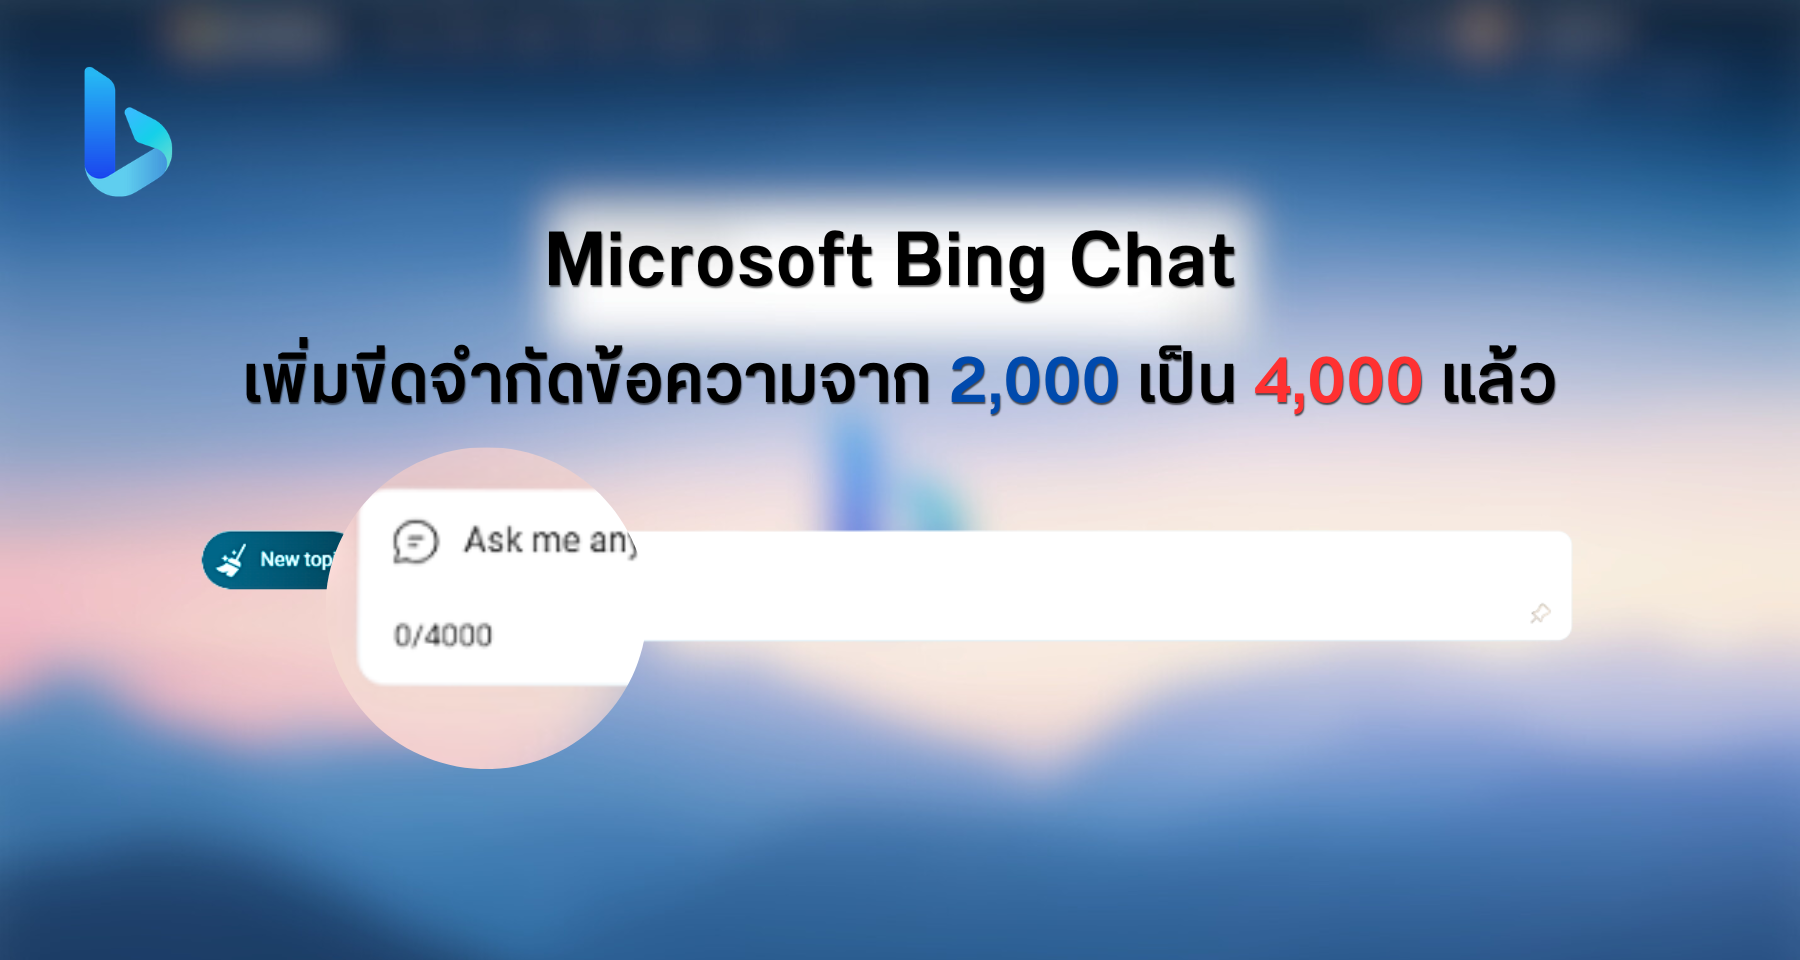 Microsoft Bing Chat เพิ่มขีดจำกัดอักขระข้อความจาก 2,000 เป็น 4,000